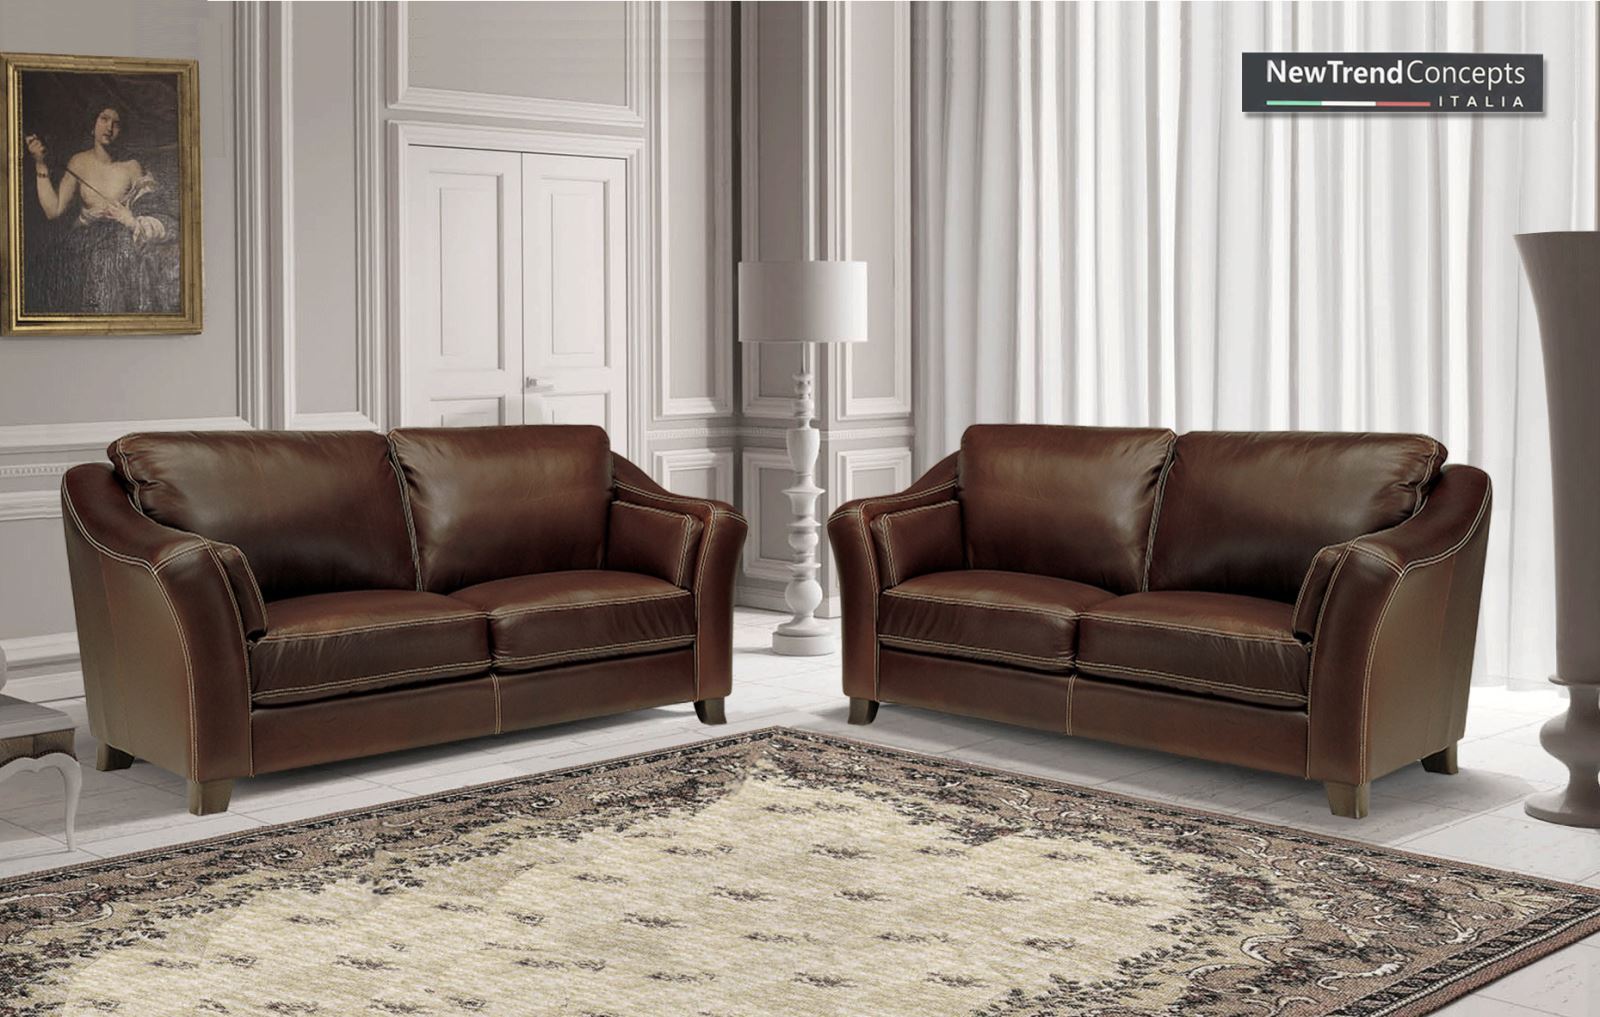 Sofa châu âu cổ điển - lựa chọn sang trọng cho phòng khách - Ảnh 3